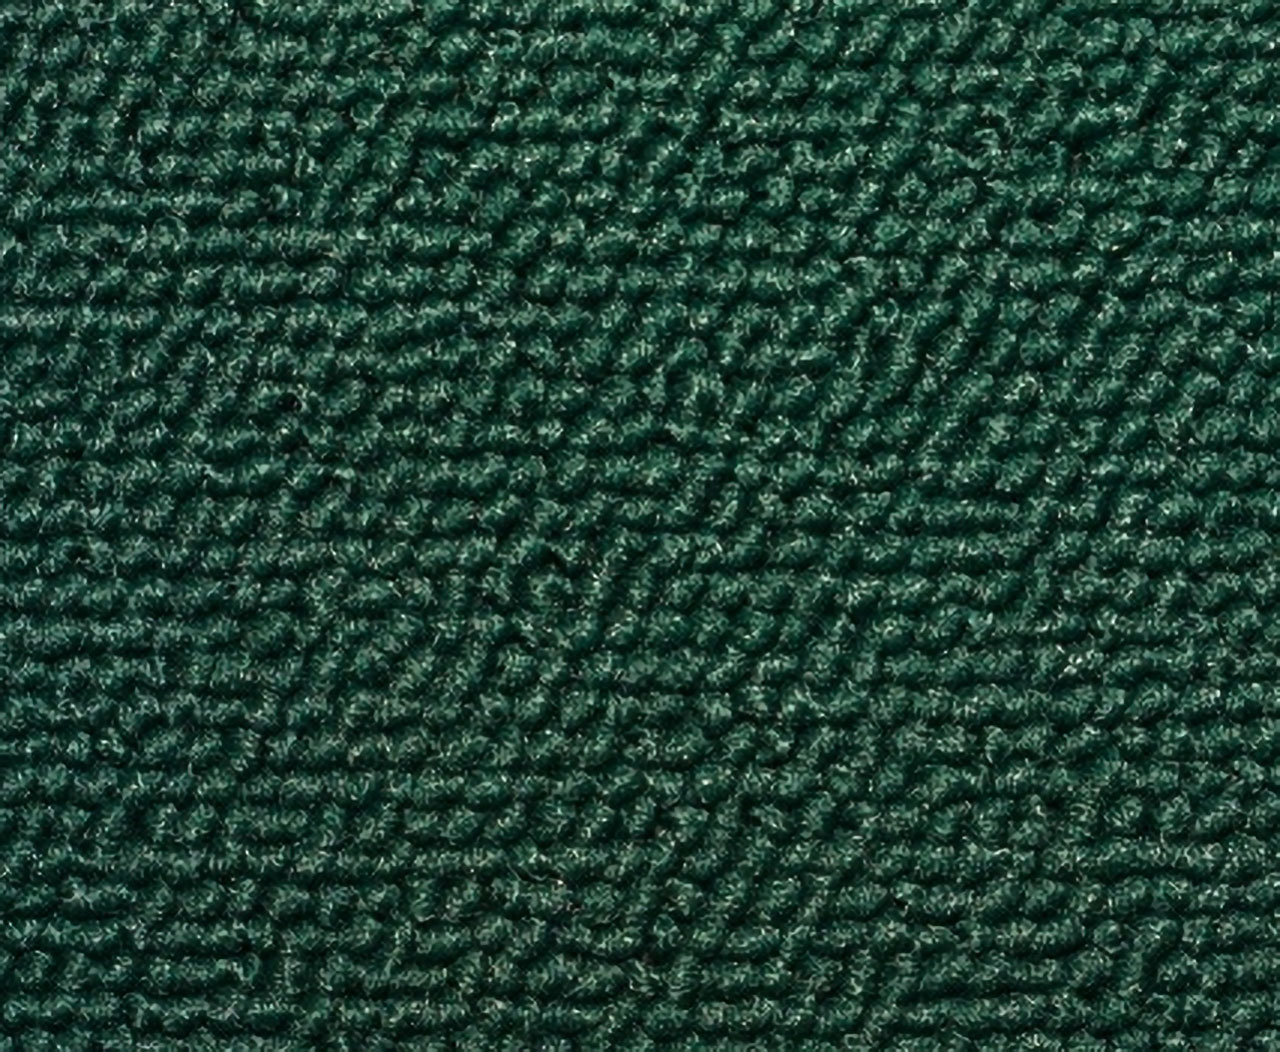 Holden Standard HR Standard Ute E80 Opera Green Carpet (Image 1 of 1)